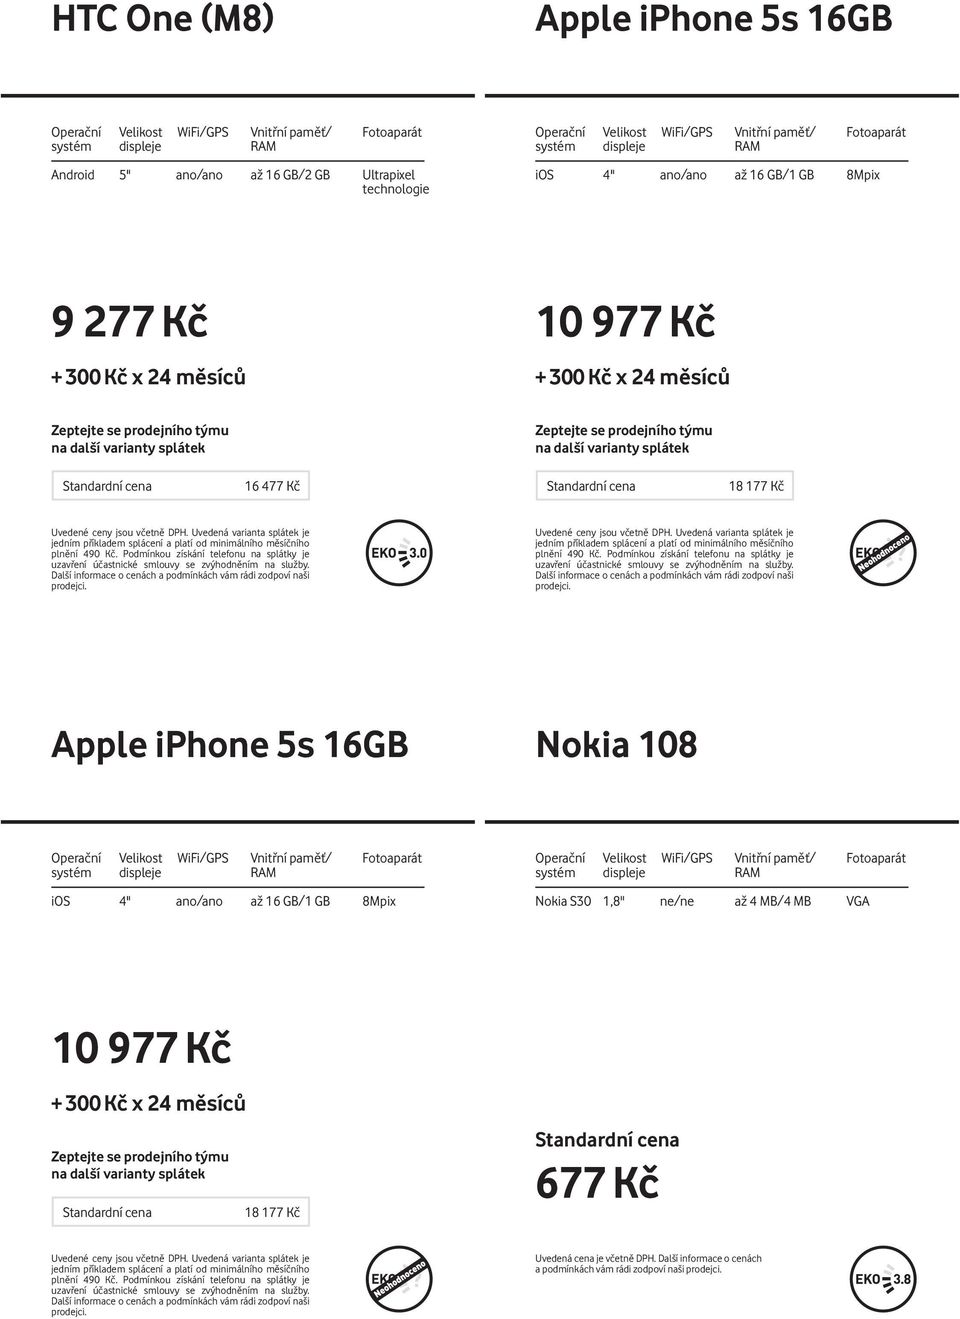 Podmínkou získání telefonu na splátky je Apple iphone 5s 16GB Nokia 108 ios 4" ano/ano až 16 GB/1 GB 8Mpix Nokia S30 1,8'' ne/ne až 4 MB/4 MB